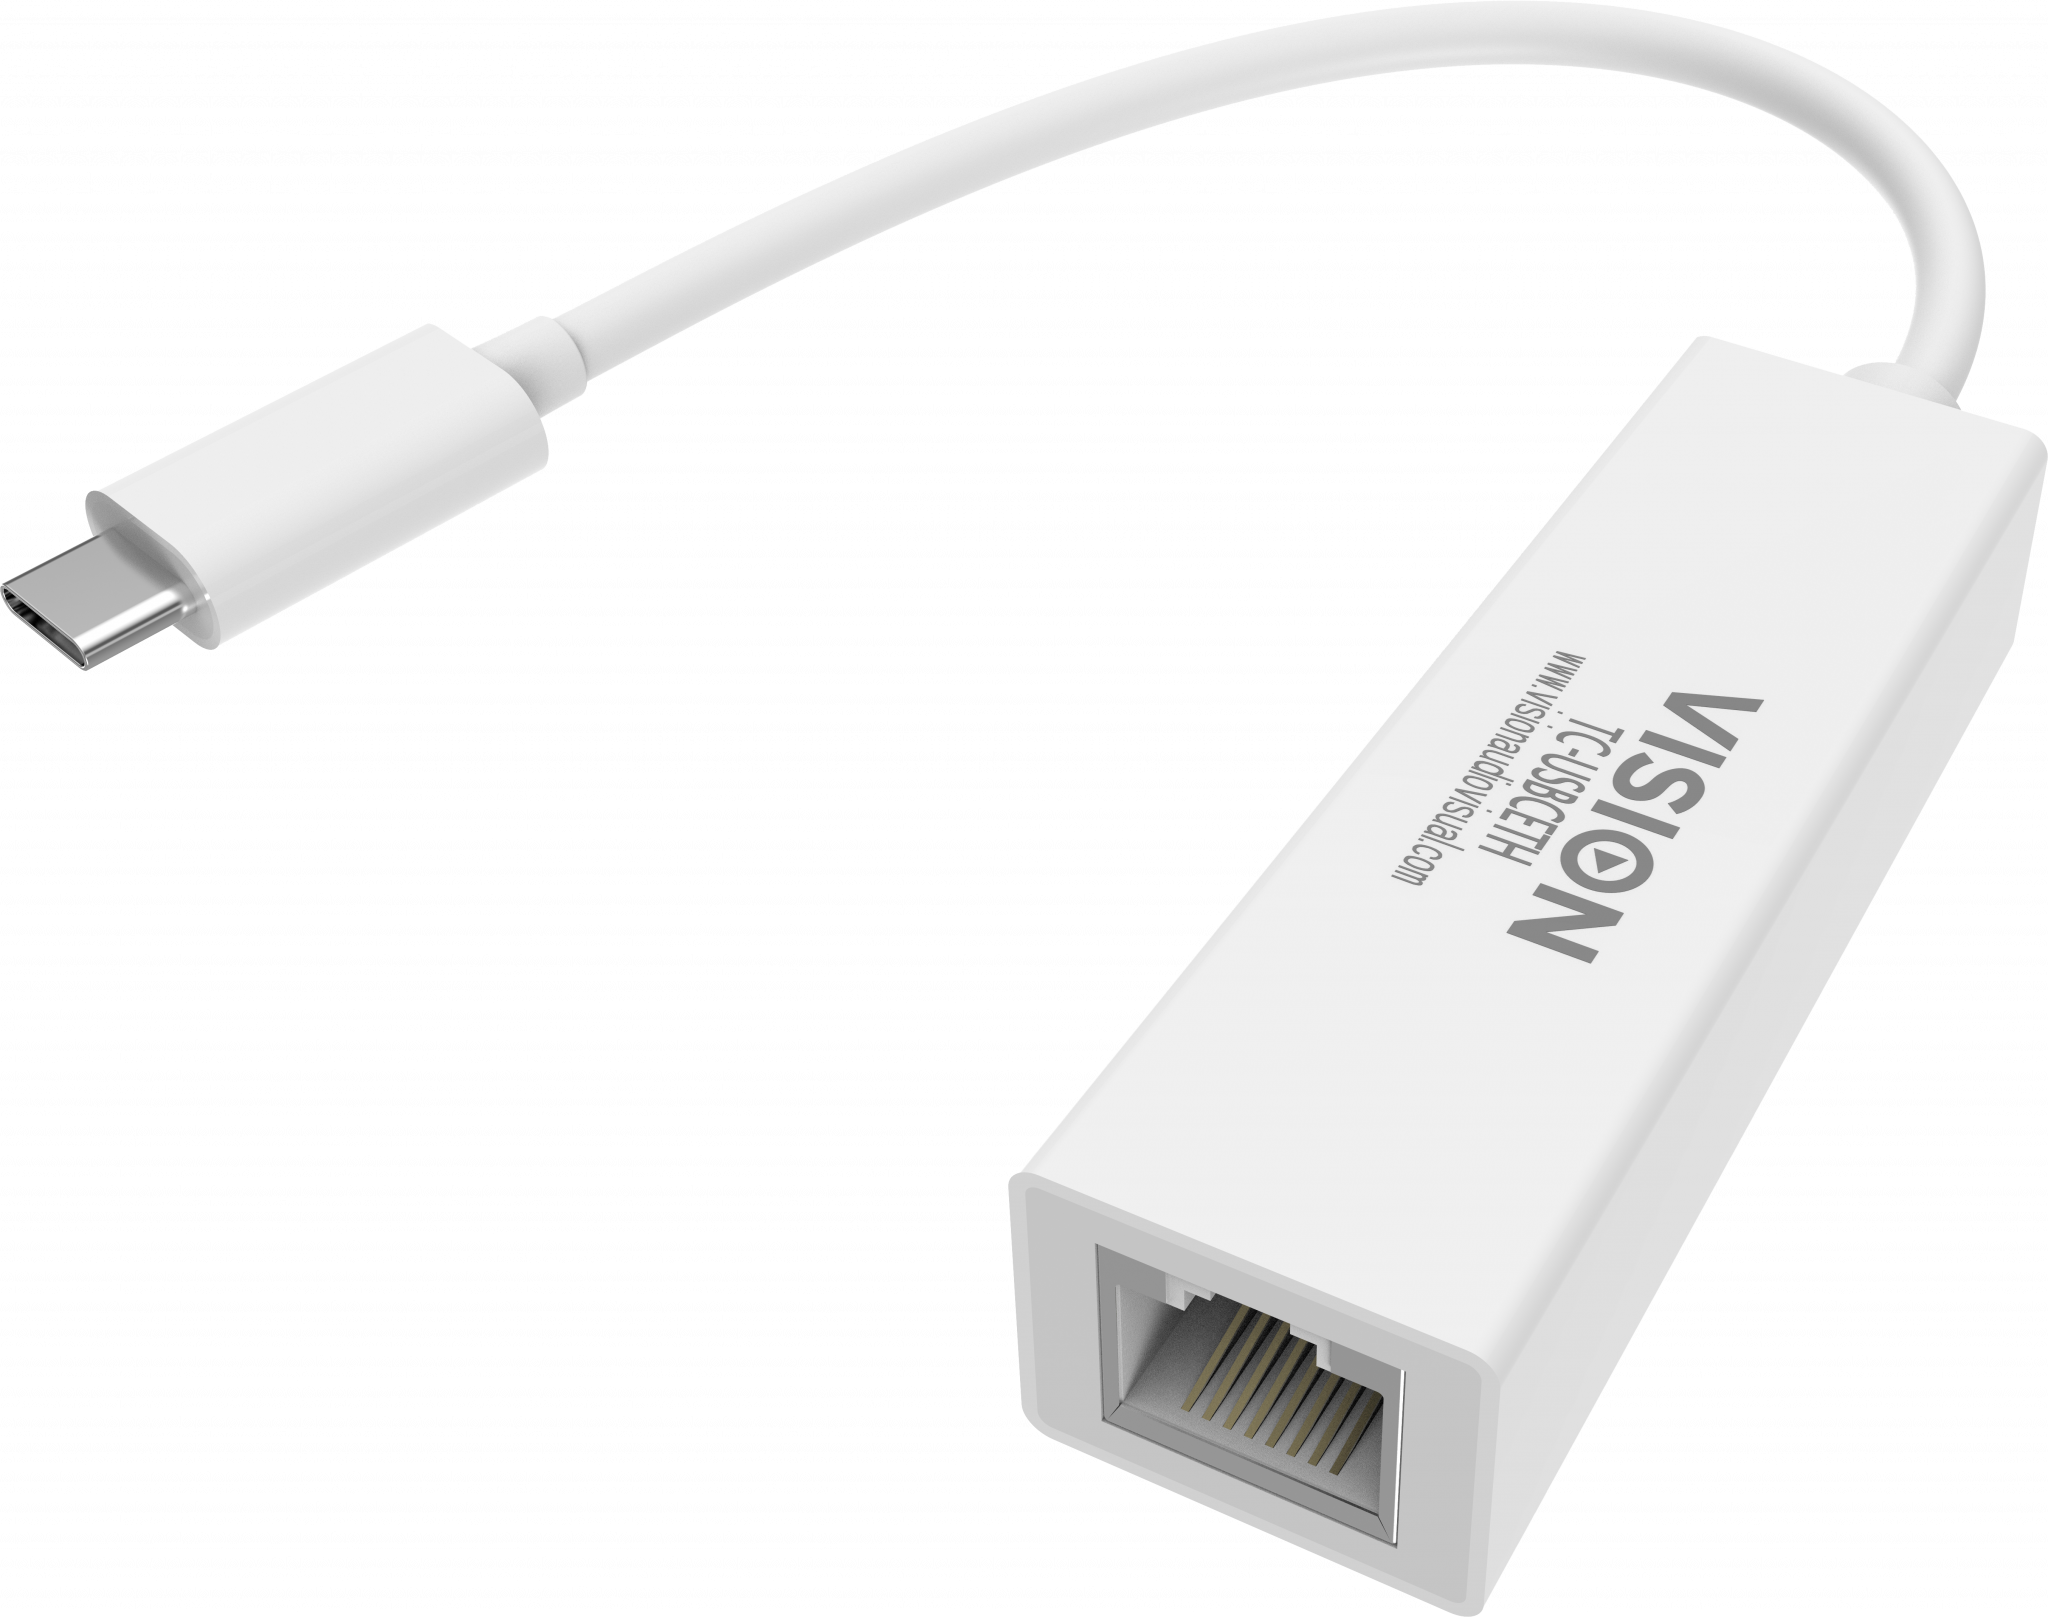 An image showing Adaptador USB-C para Ethernet de qualidade profissional, branco